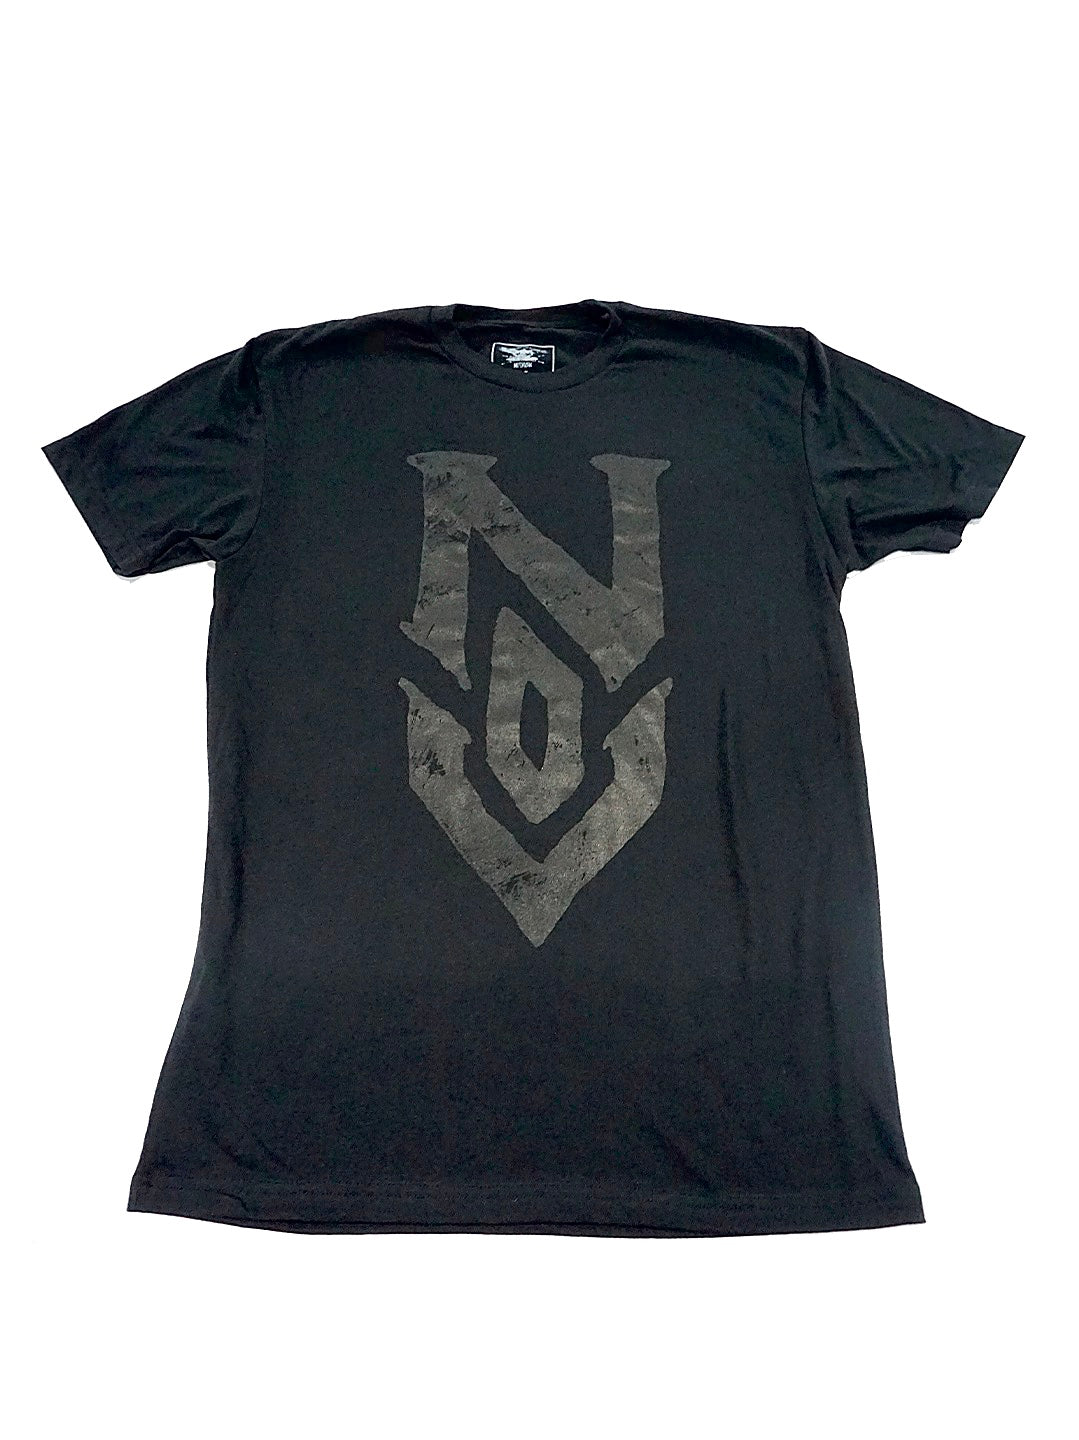 N.O.V. Blackout Shirt